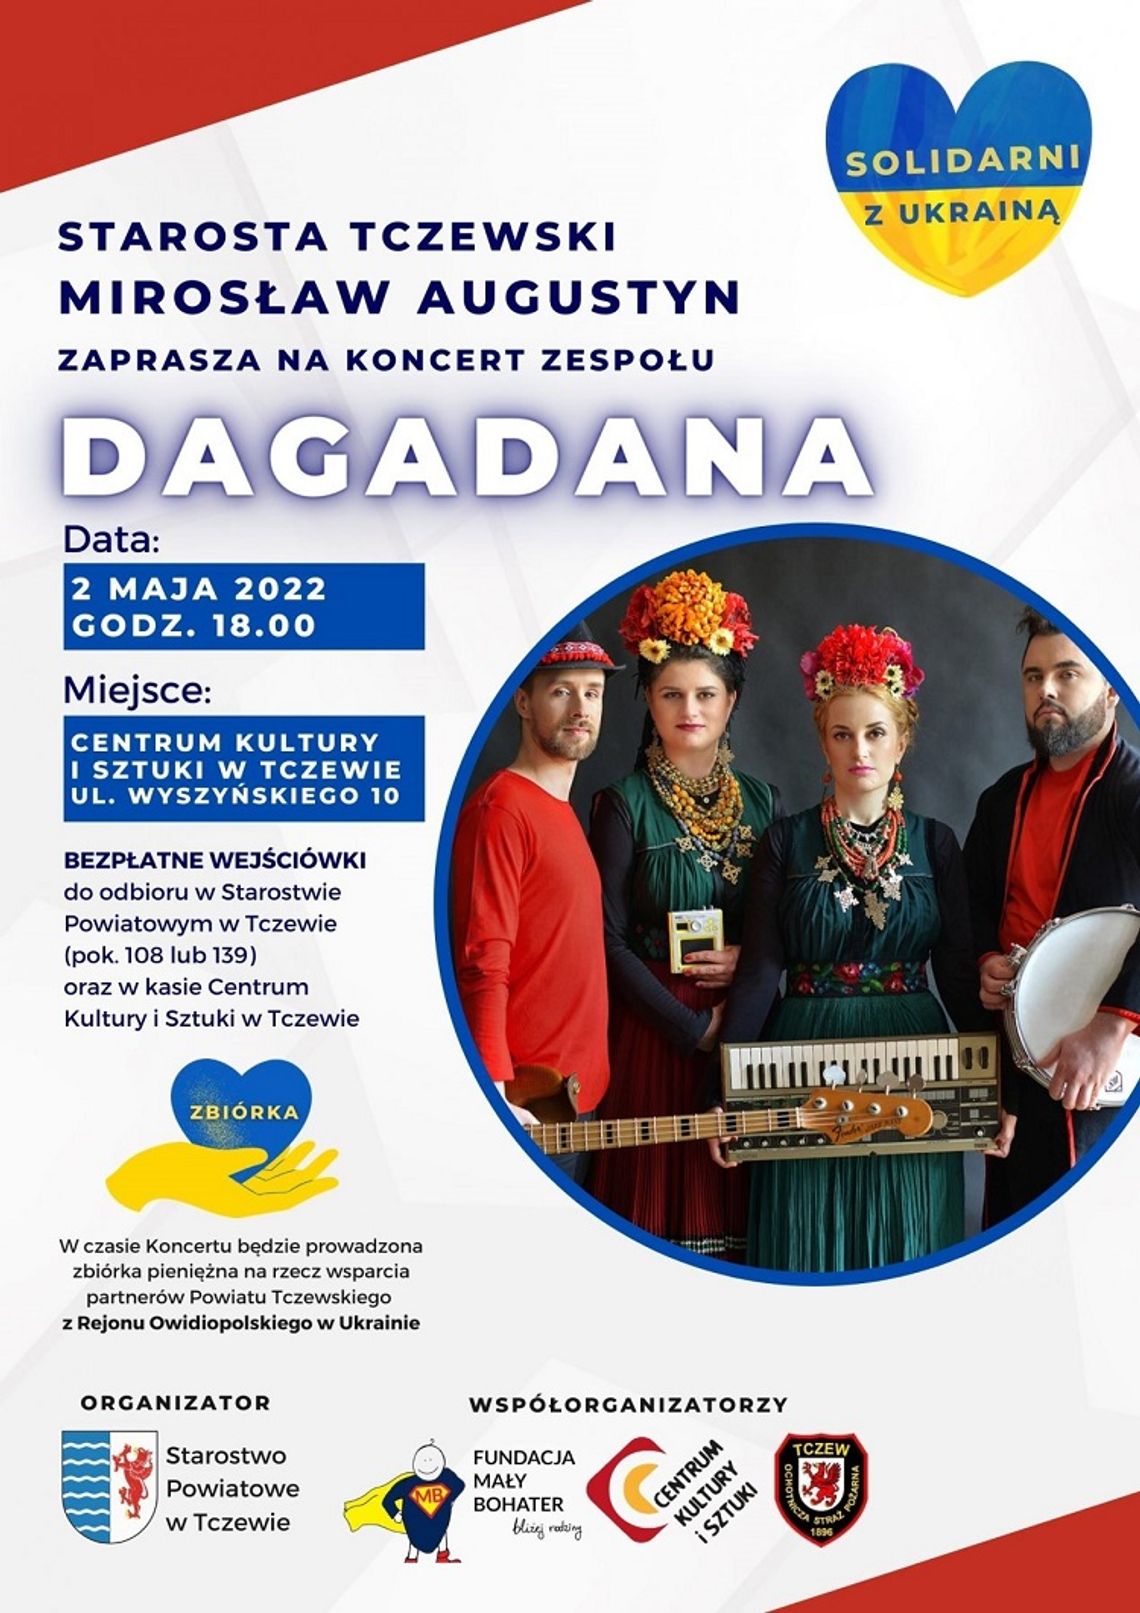 Szczytny cel i wyjątkowy wieczór! Koncert zespołu DAGADANA w Tczewie.